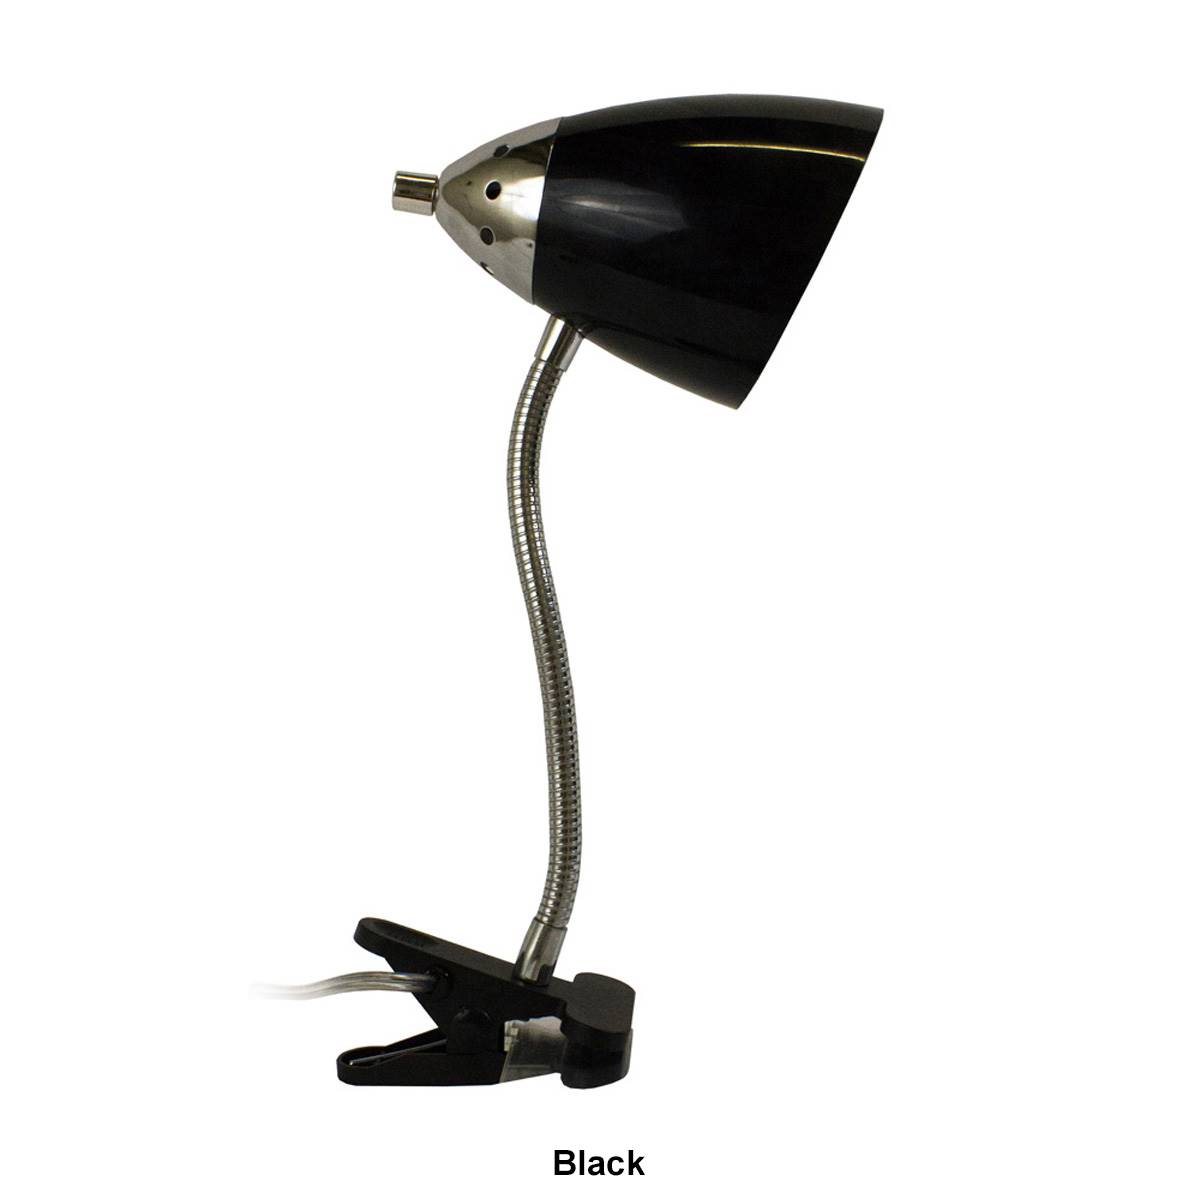 LimeLights Flossy Flexible Gooseneck Clip Light Desk Lamp